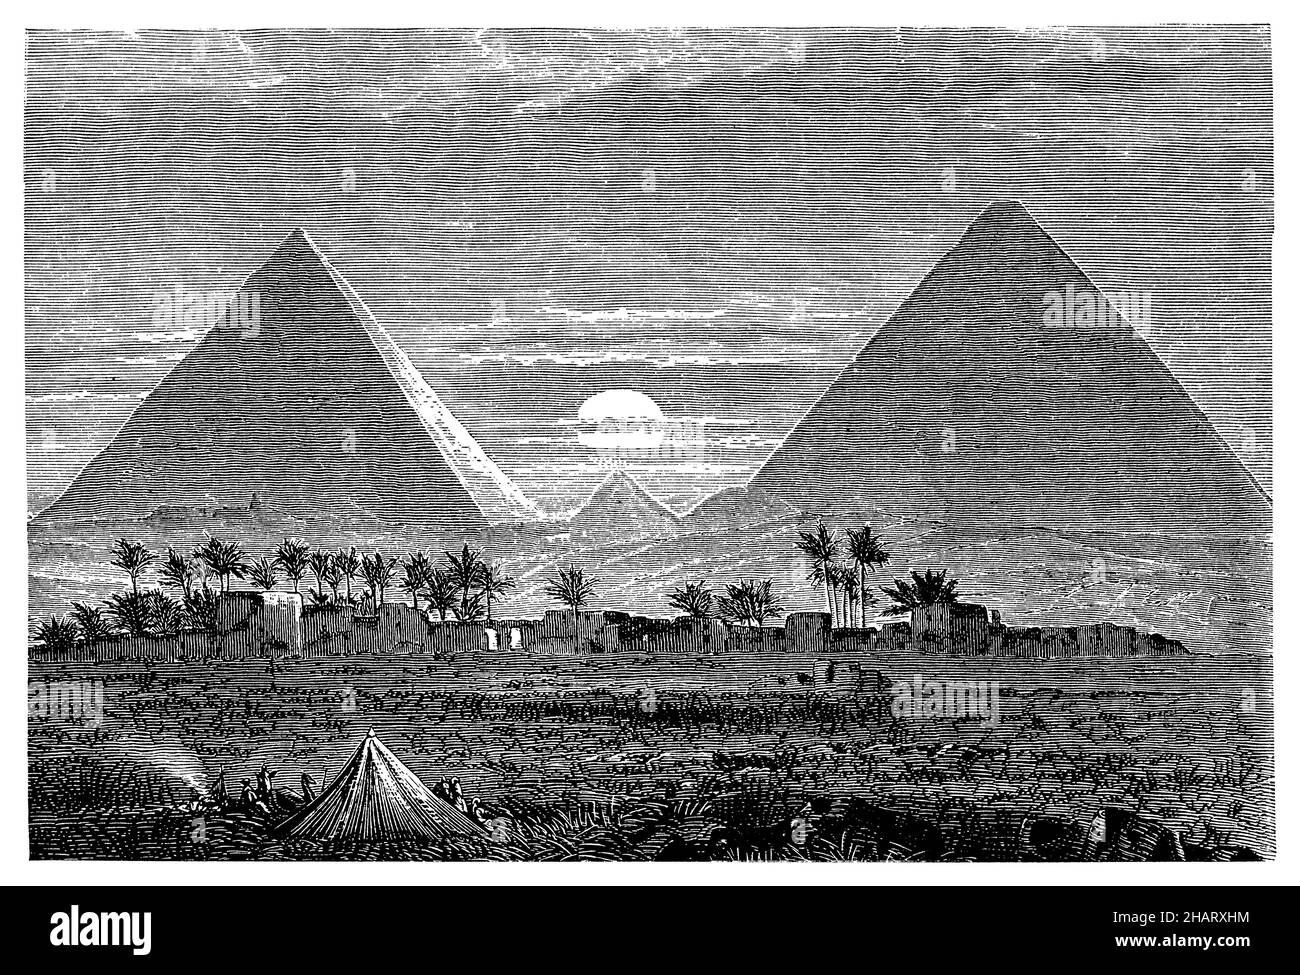 Pyramiden von Gizeh, , (Geographie Buch, 1892), Pyramiden von Gizeh, Pyramides de Gizeh Stockfoto